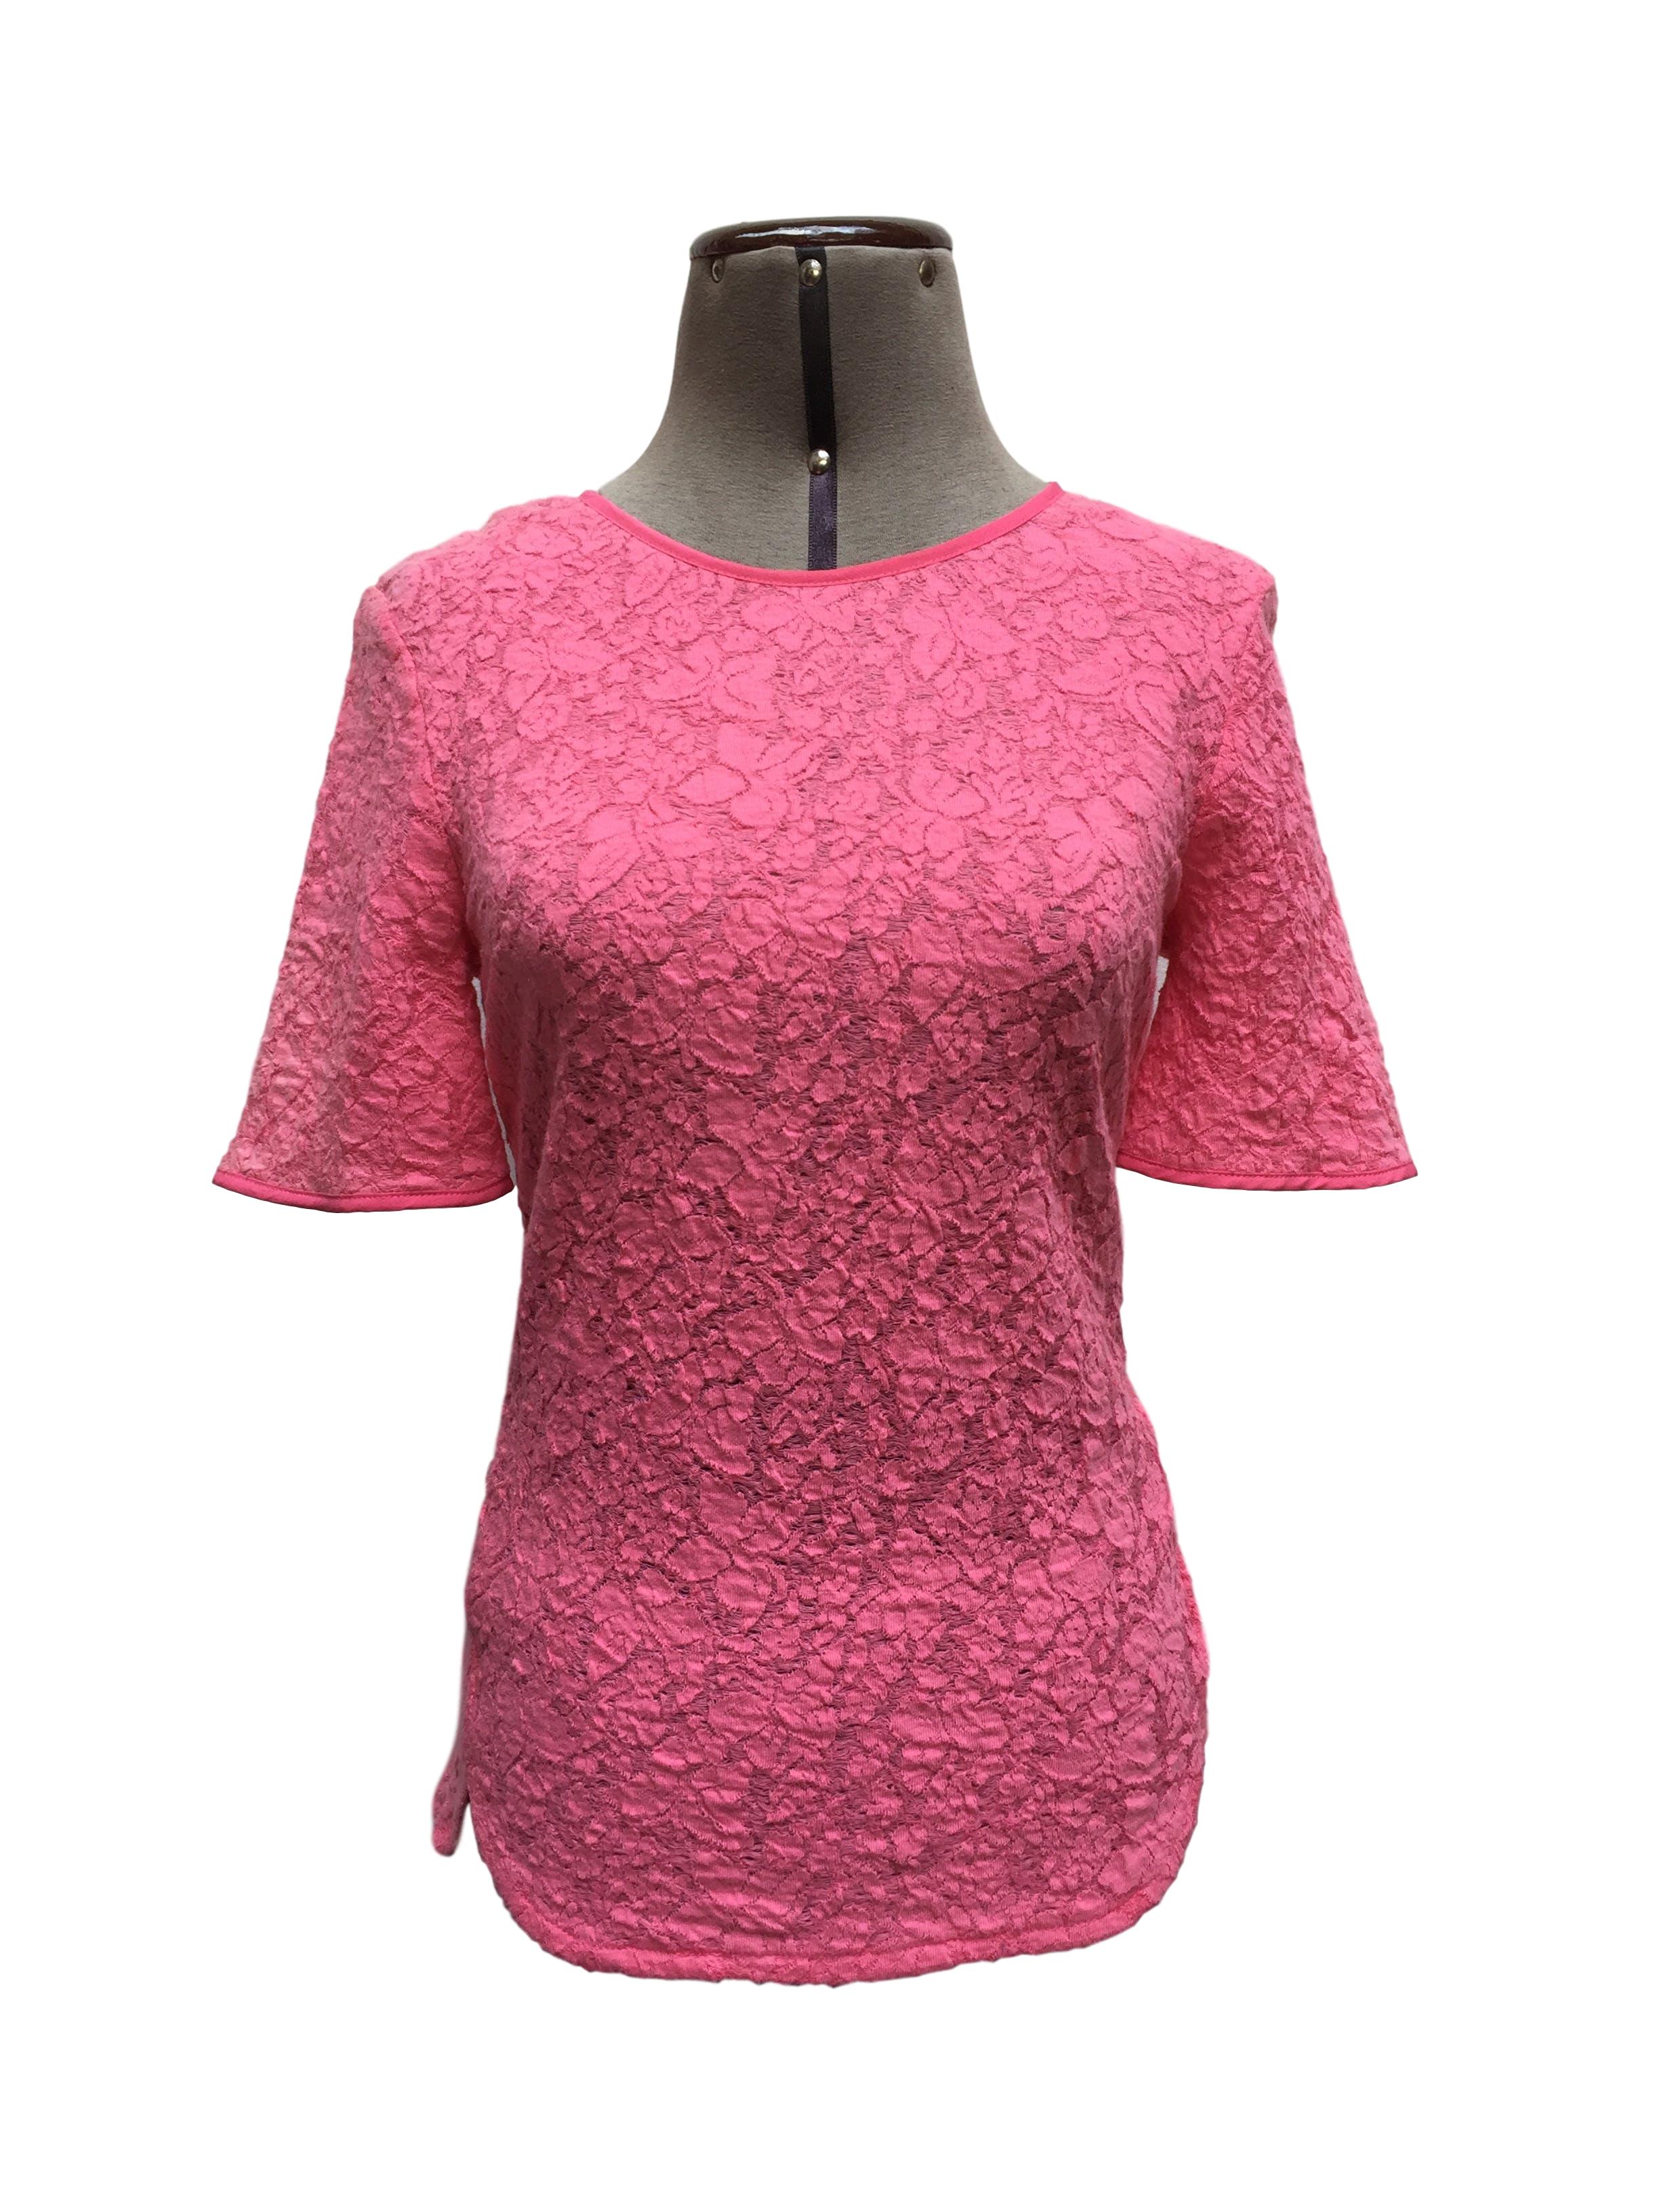 Blusa Oasis rosa con textura de flores, botón posterior en el cuello. Arma lindo
Talla S